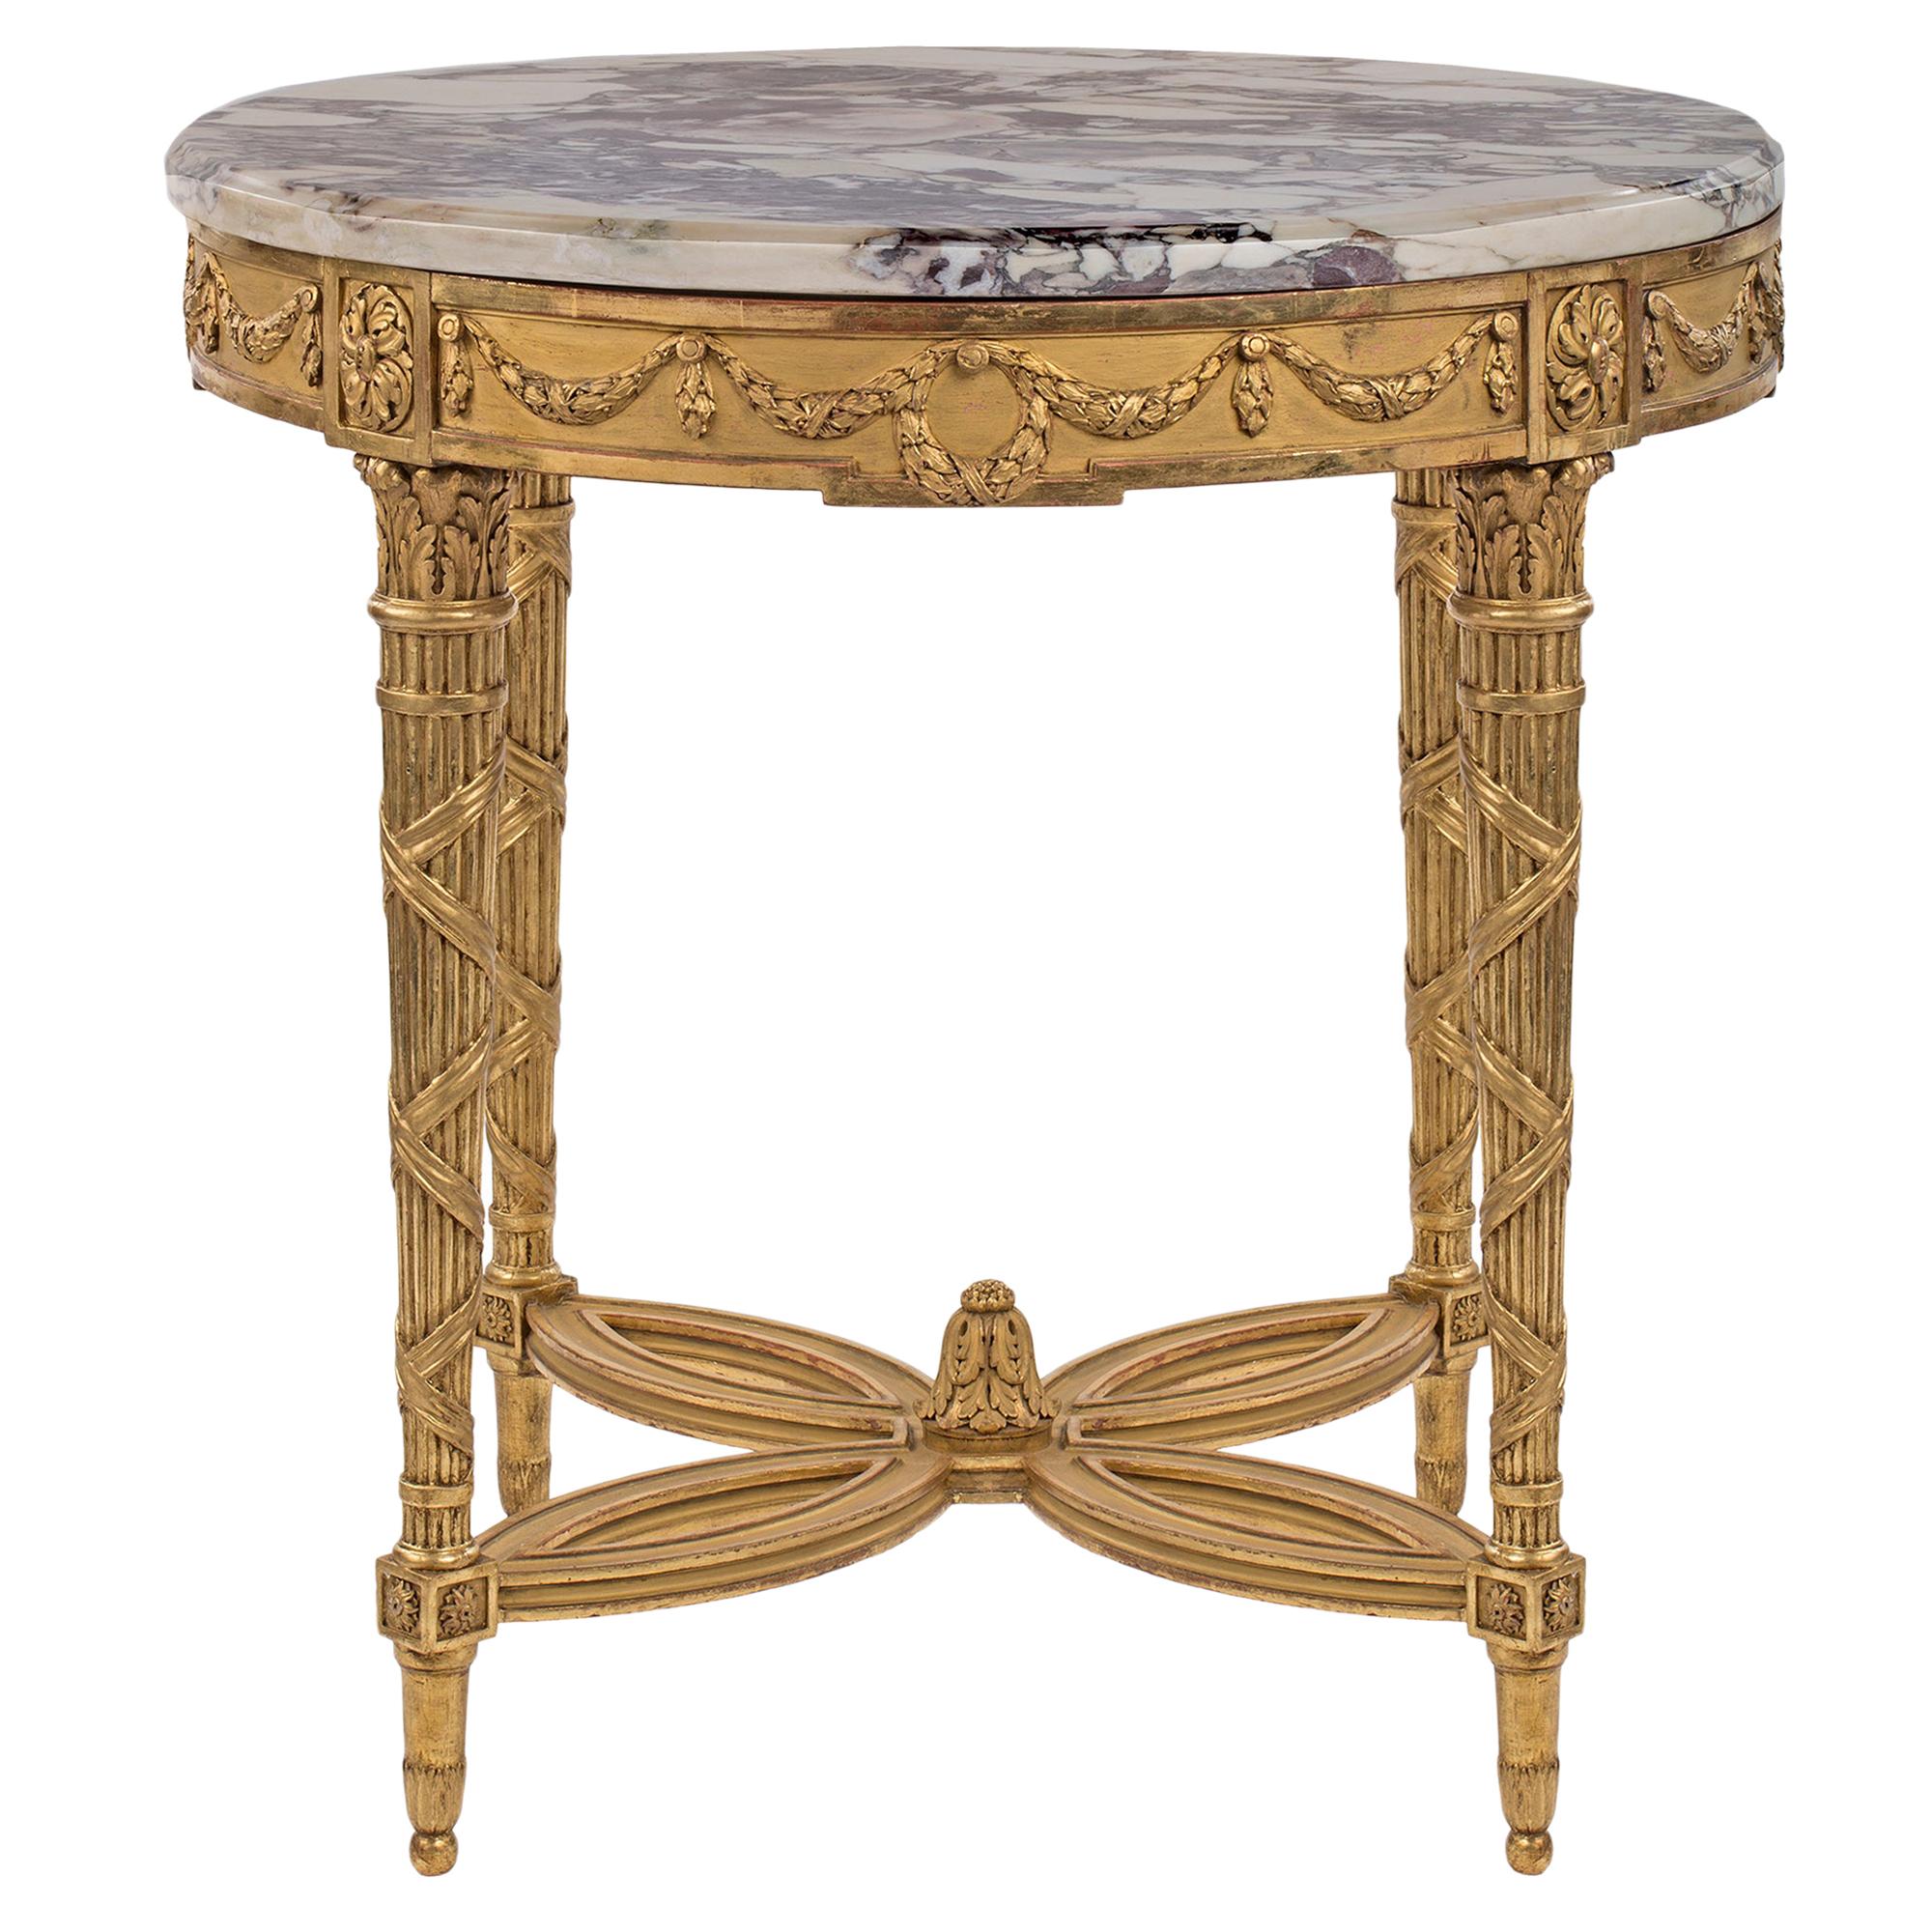 Table centrale de style Louis XVI du 19ème siècle en bois doré et marbre Mdicis français